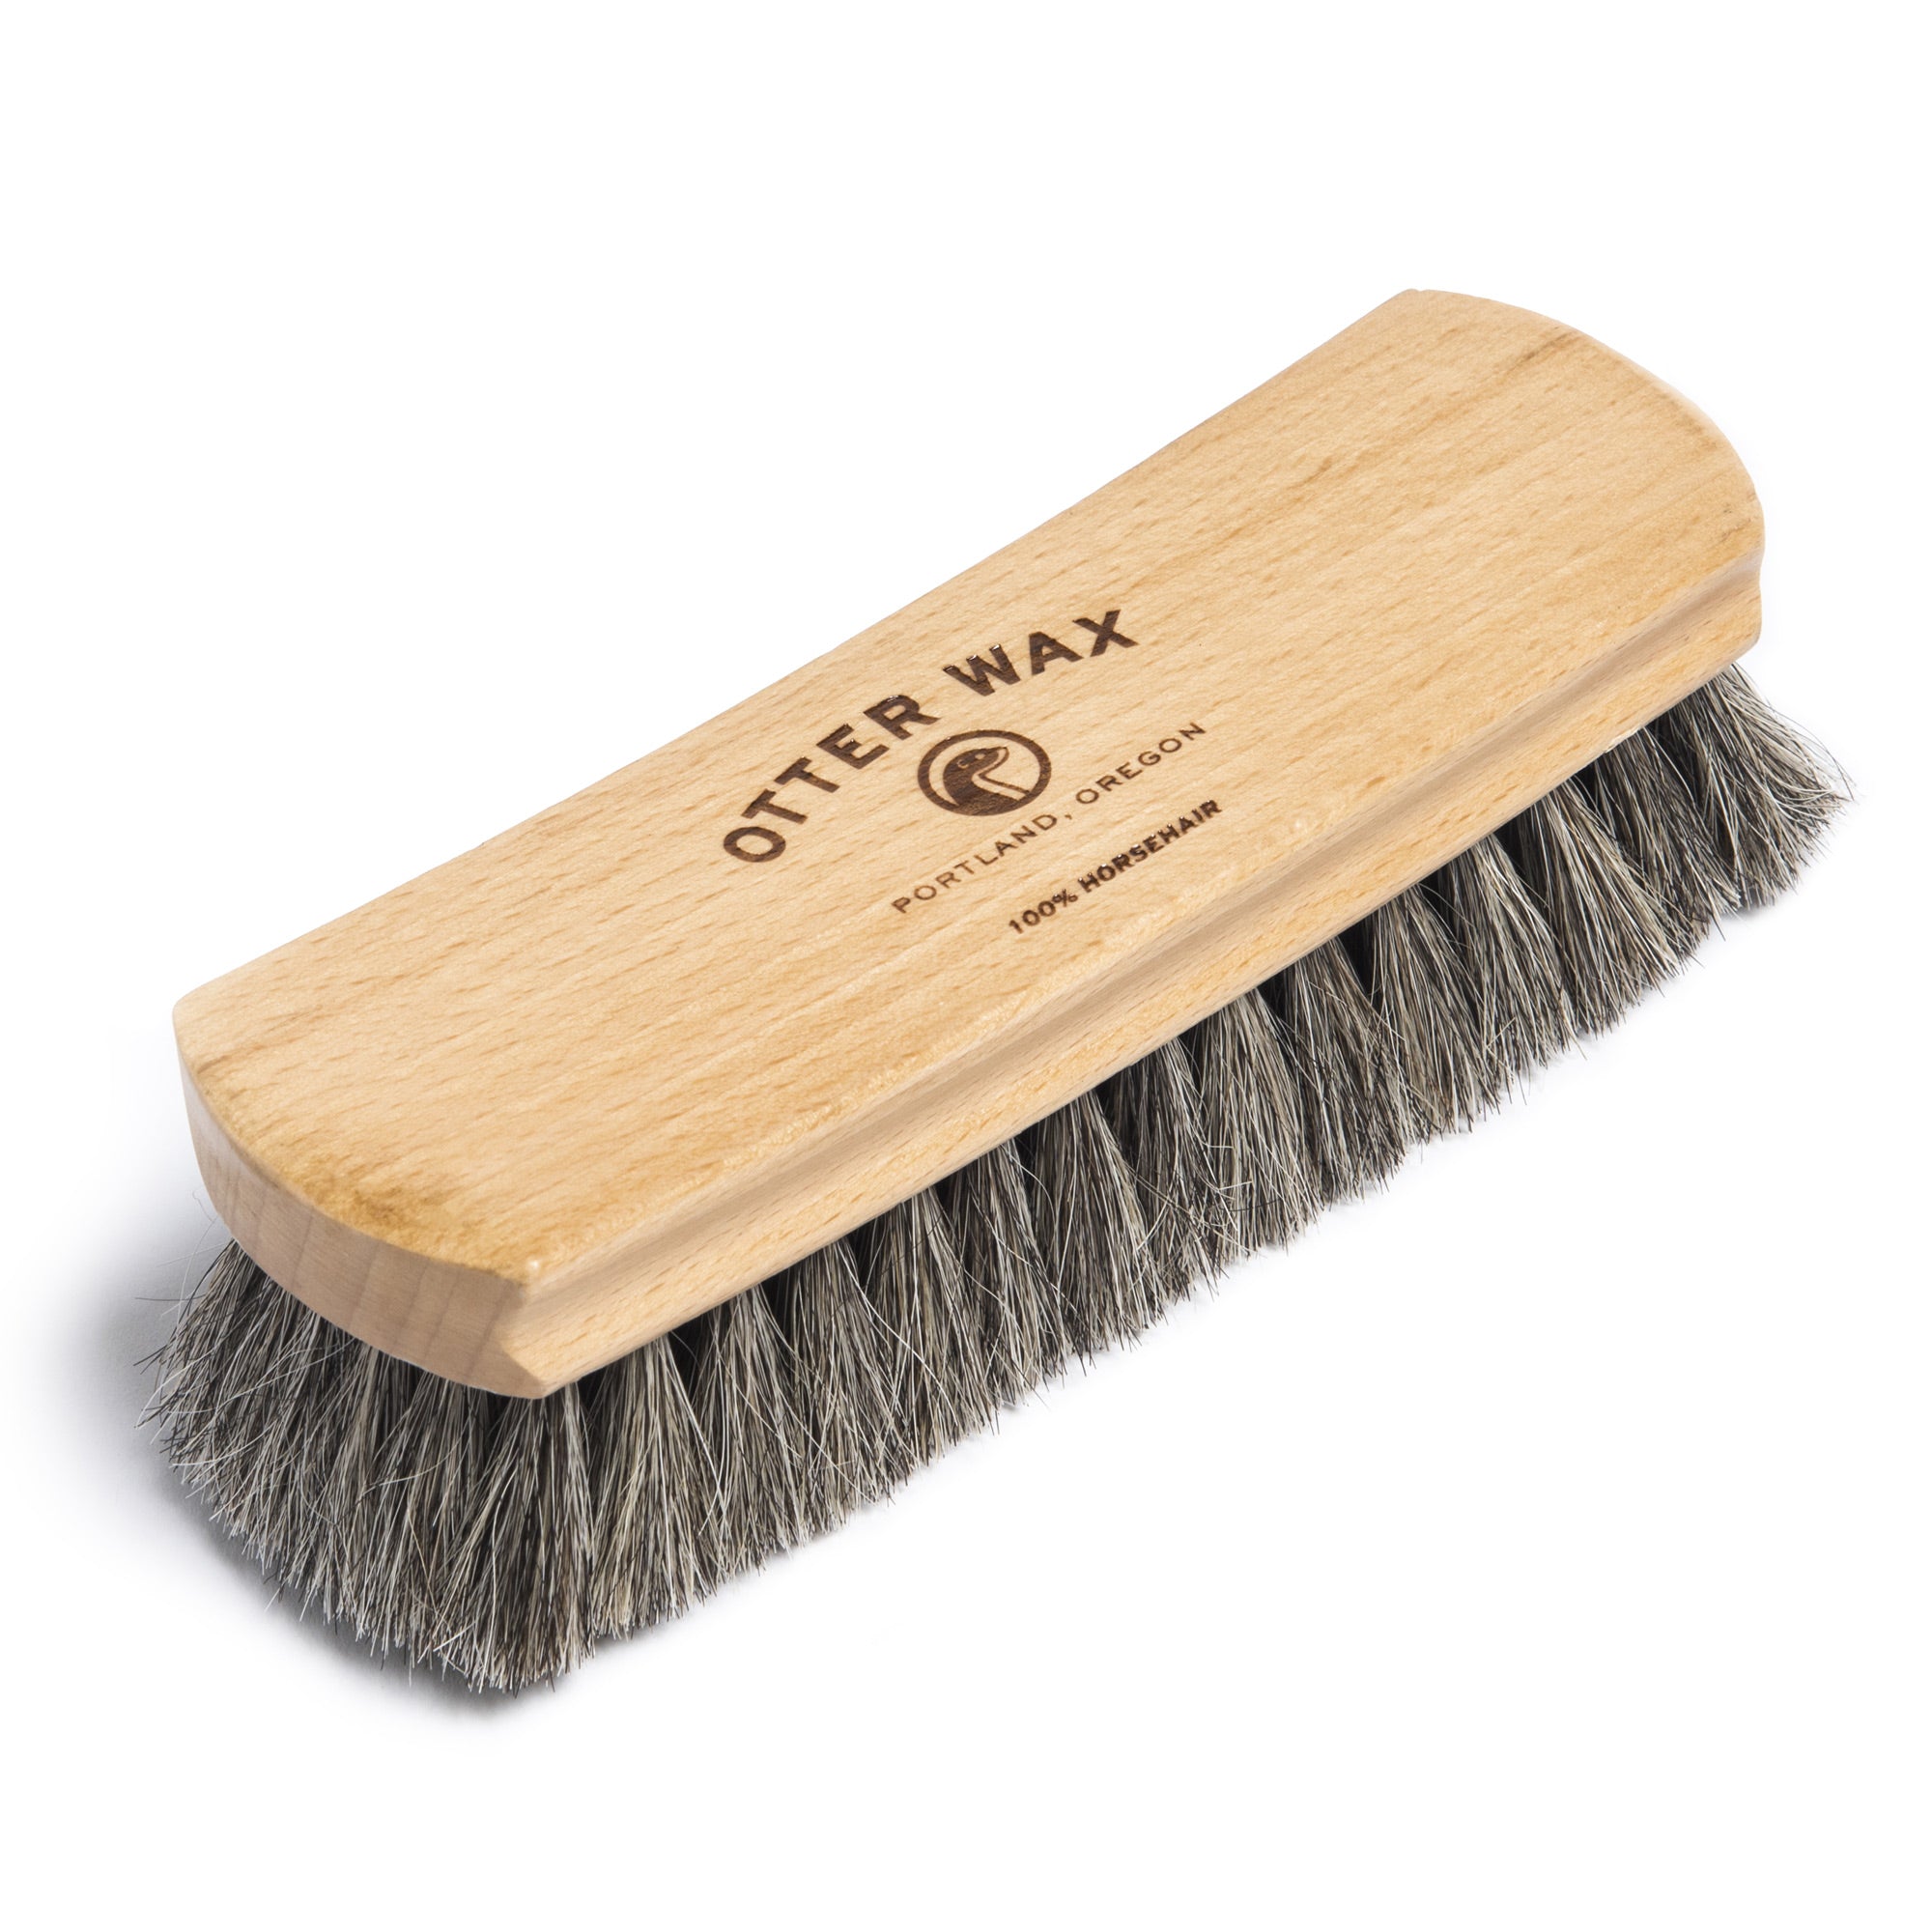 Otter Wax Premium Horsehair Shoe Brush